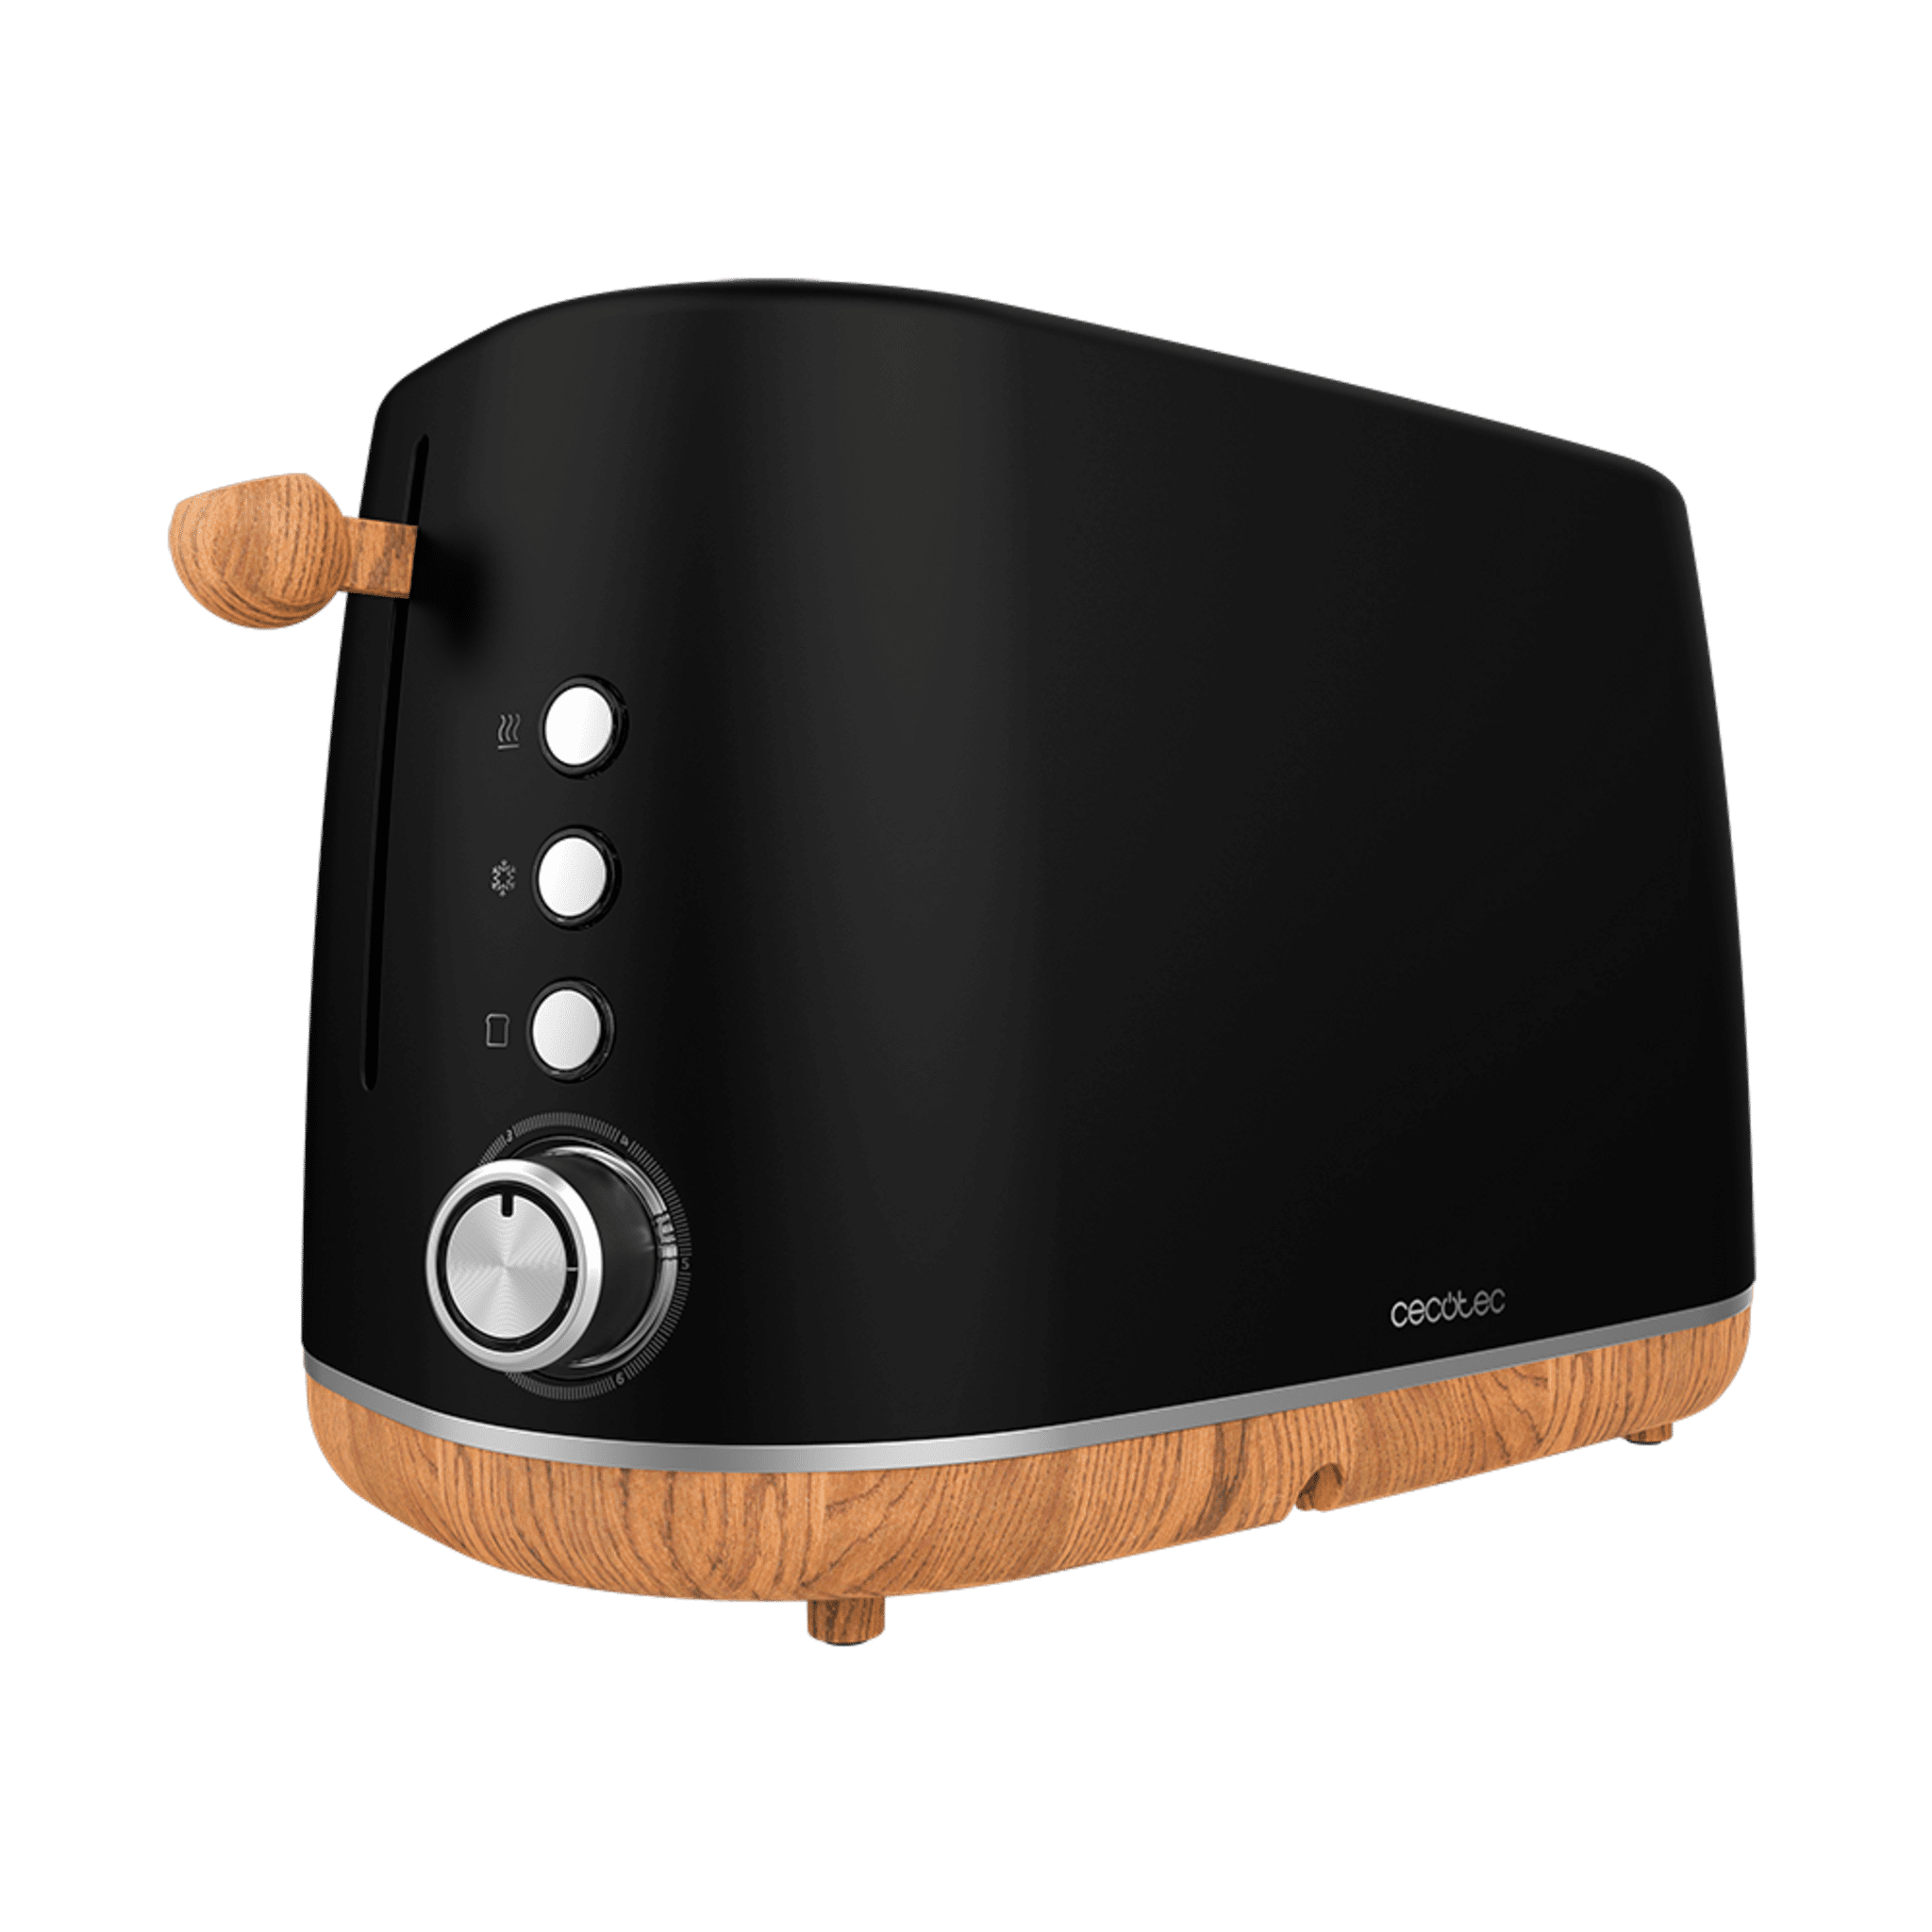 Tostador Digital TrendyToast 9000 Black Woody. 900 W, 2 Ranuras extraanchas, Varillas superiores para calentar, Luz indicadora de Funcionamiento